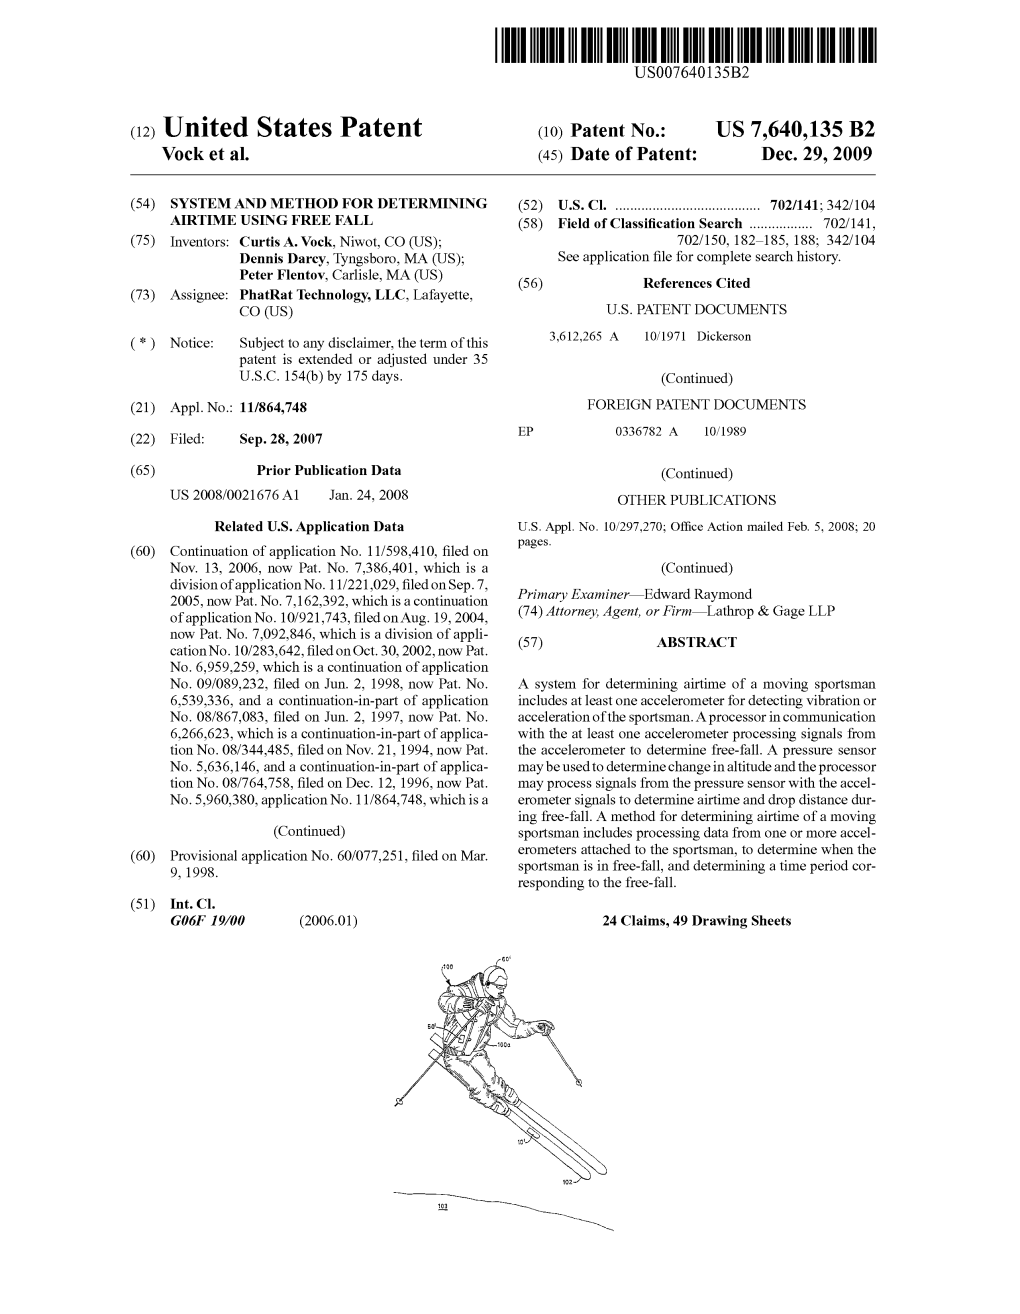 Patent No.: US 7640135 B2 of Application No.1092743, Filedon